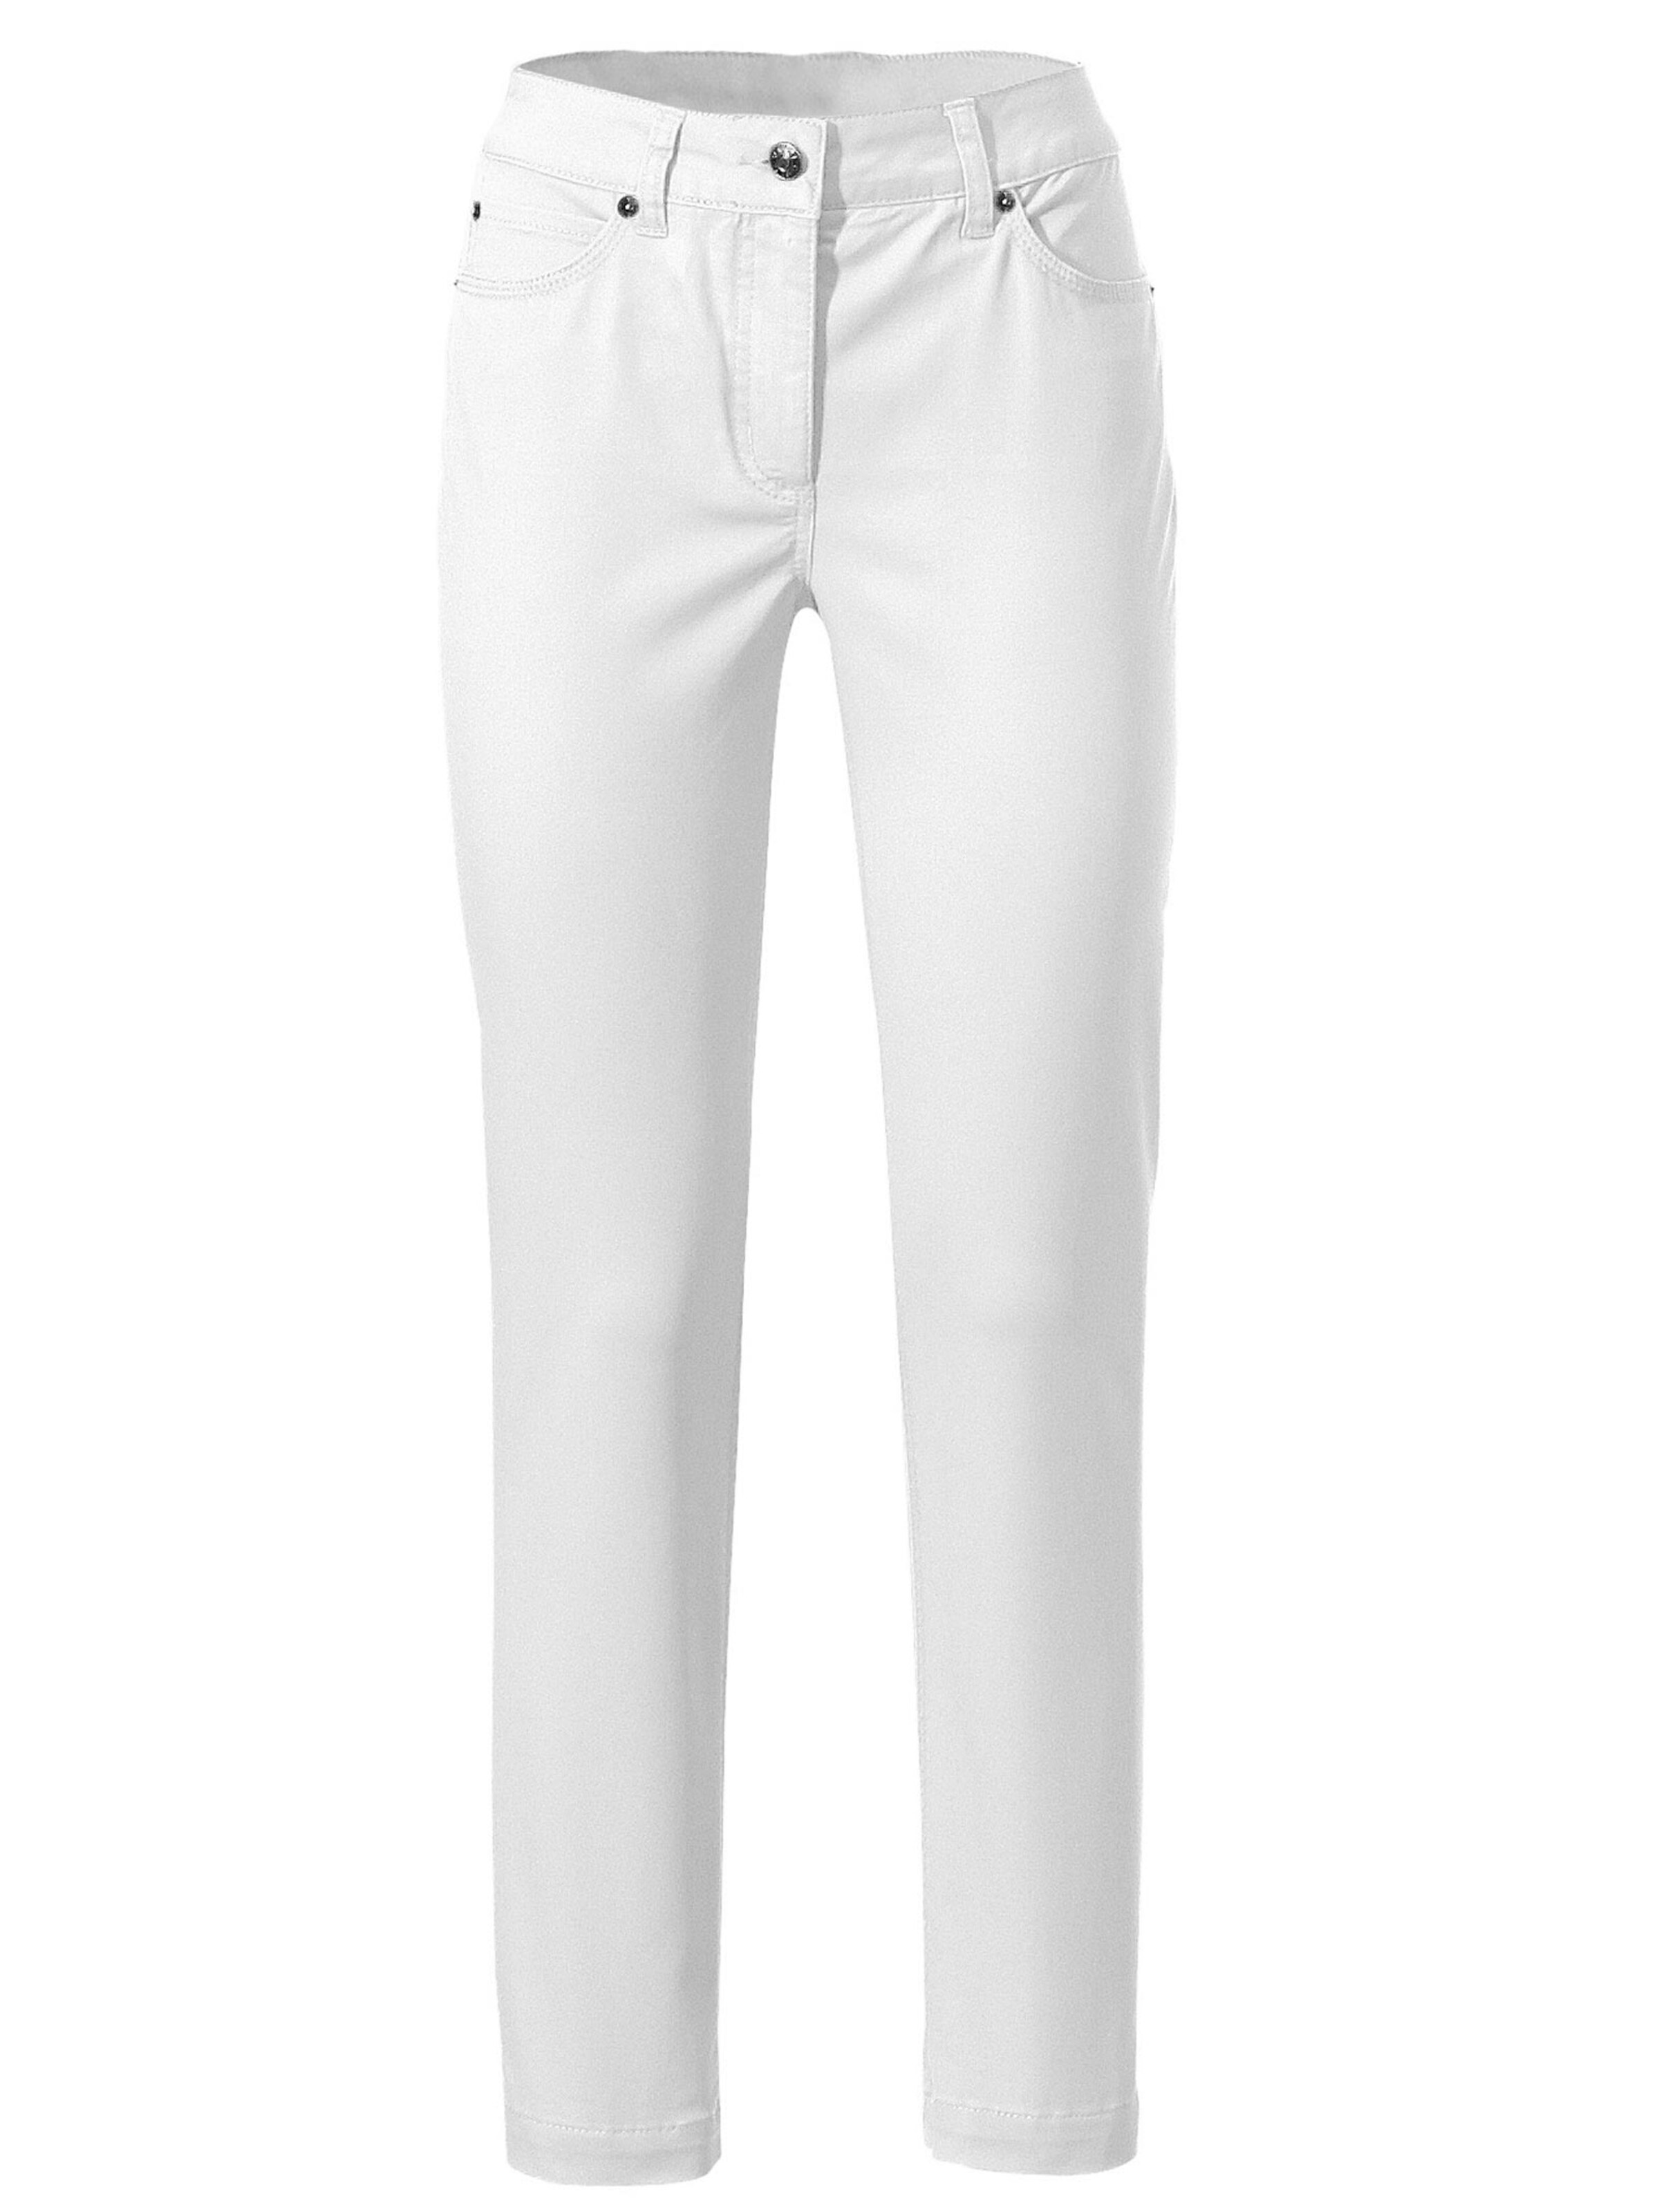 Damenmode Jeans Ashley Brooke Bauchweg-Jeans in weiß 